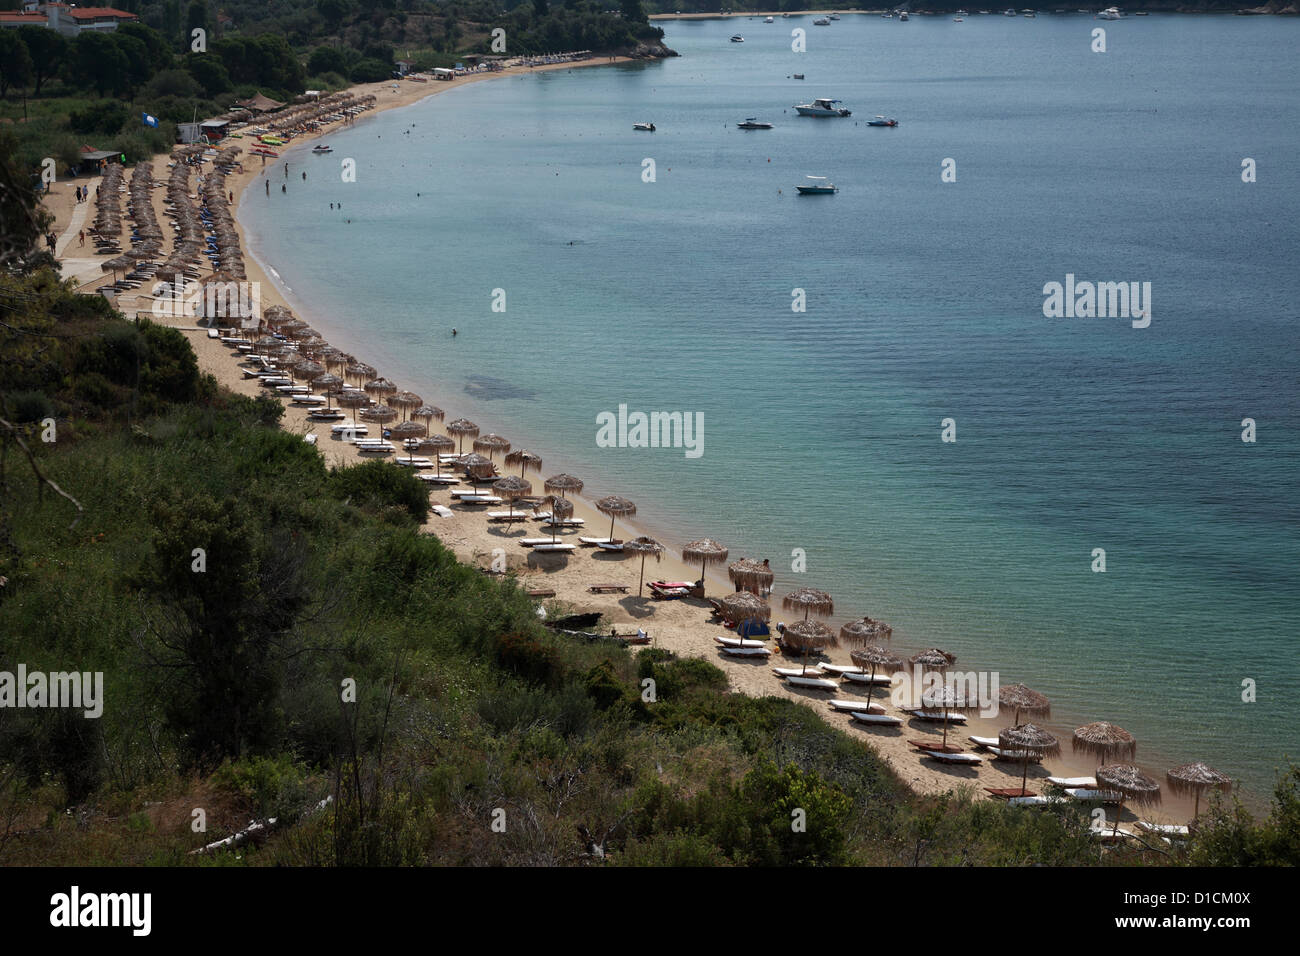 View down onto Koukounaries beach, Skiathios, Greece Stock Photo